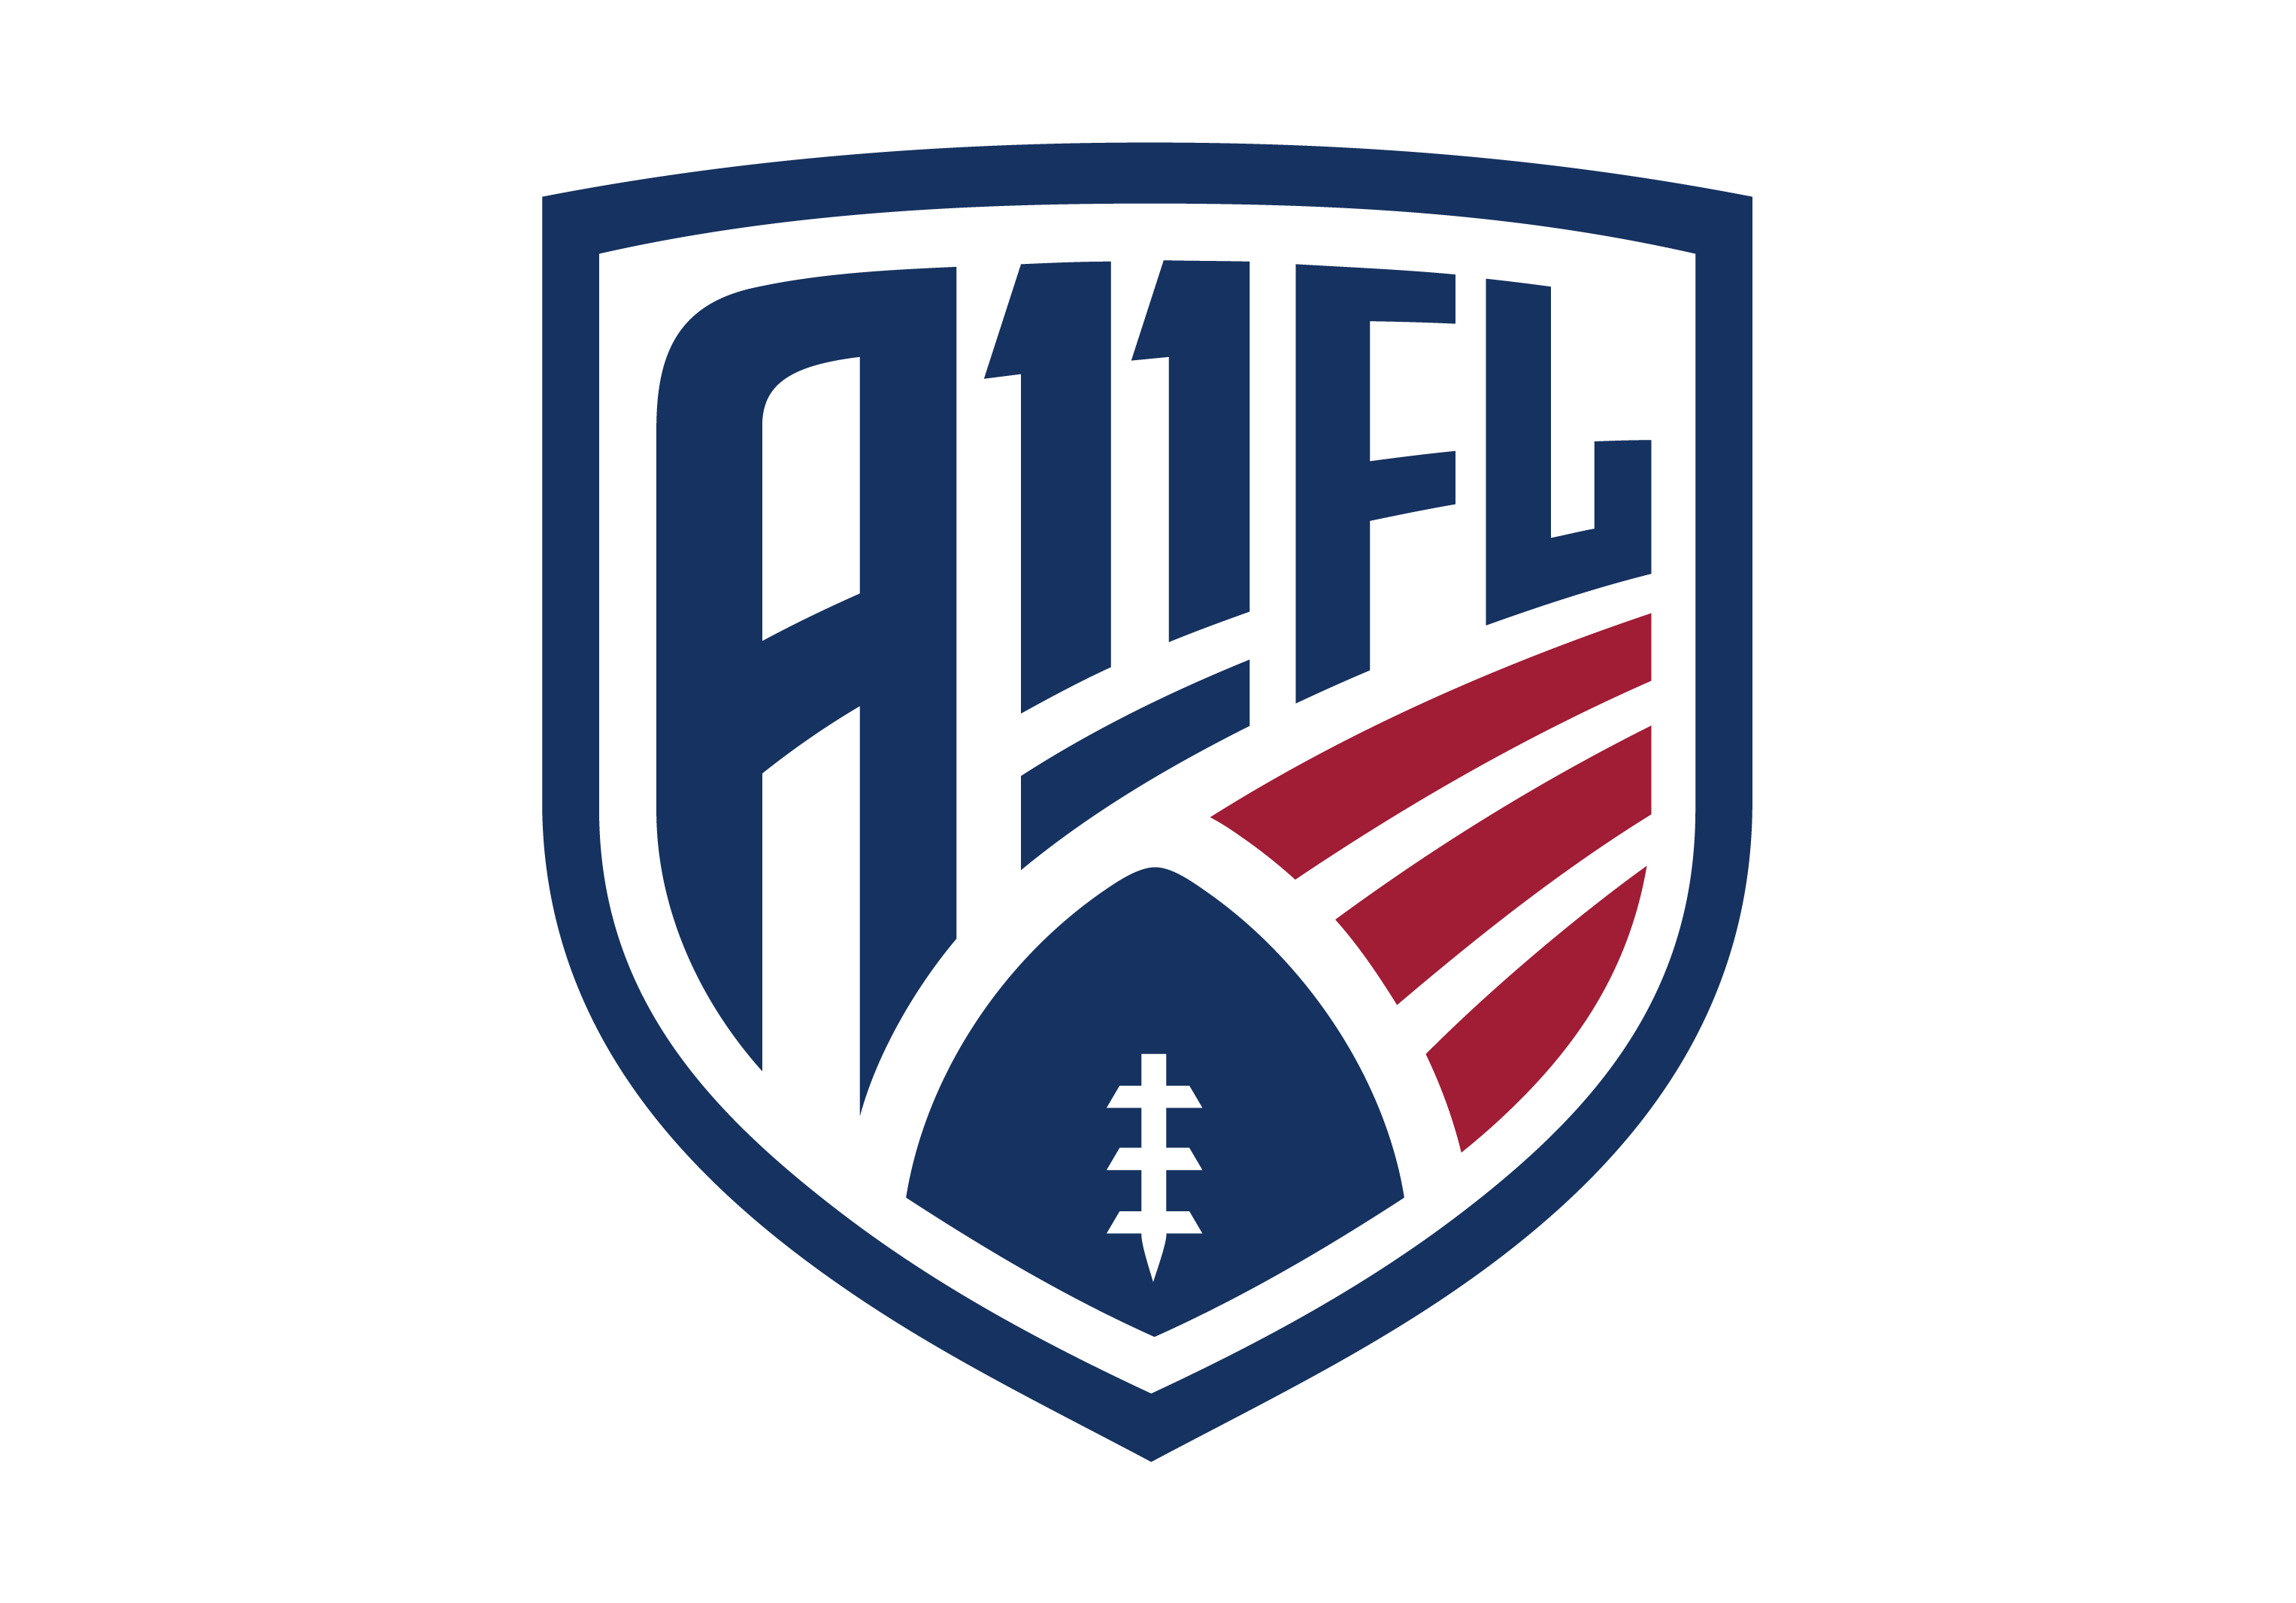 A-11 Football League